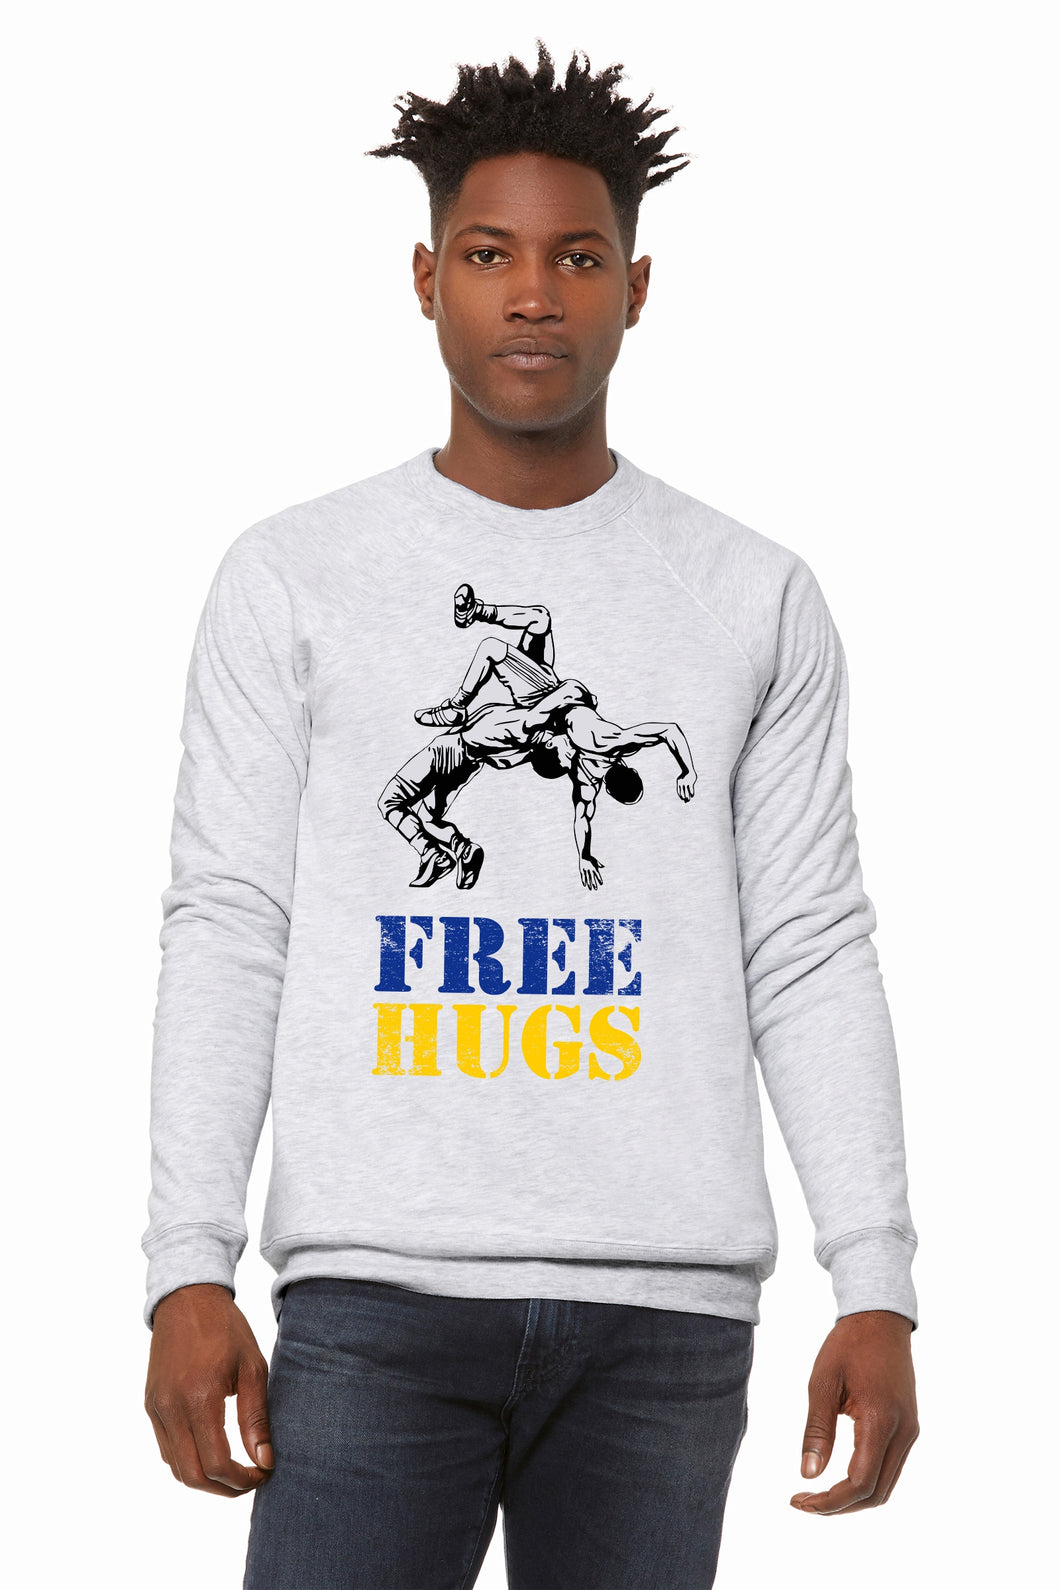 Free Hugs Crew Neck Unisex